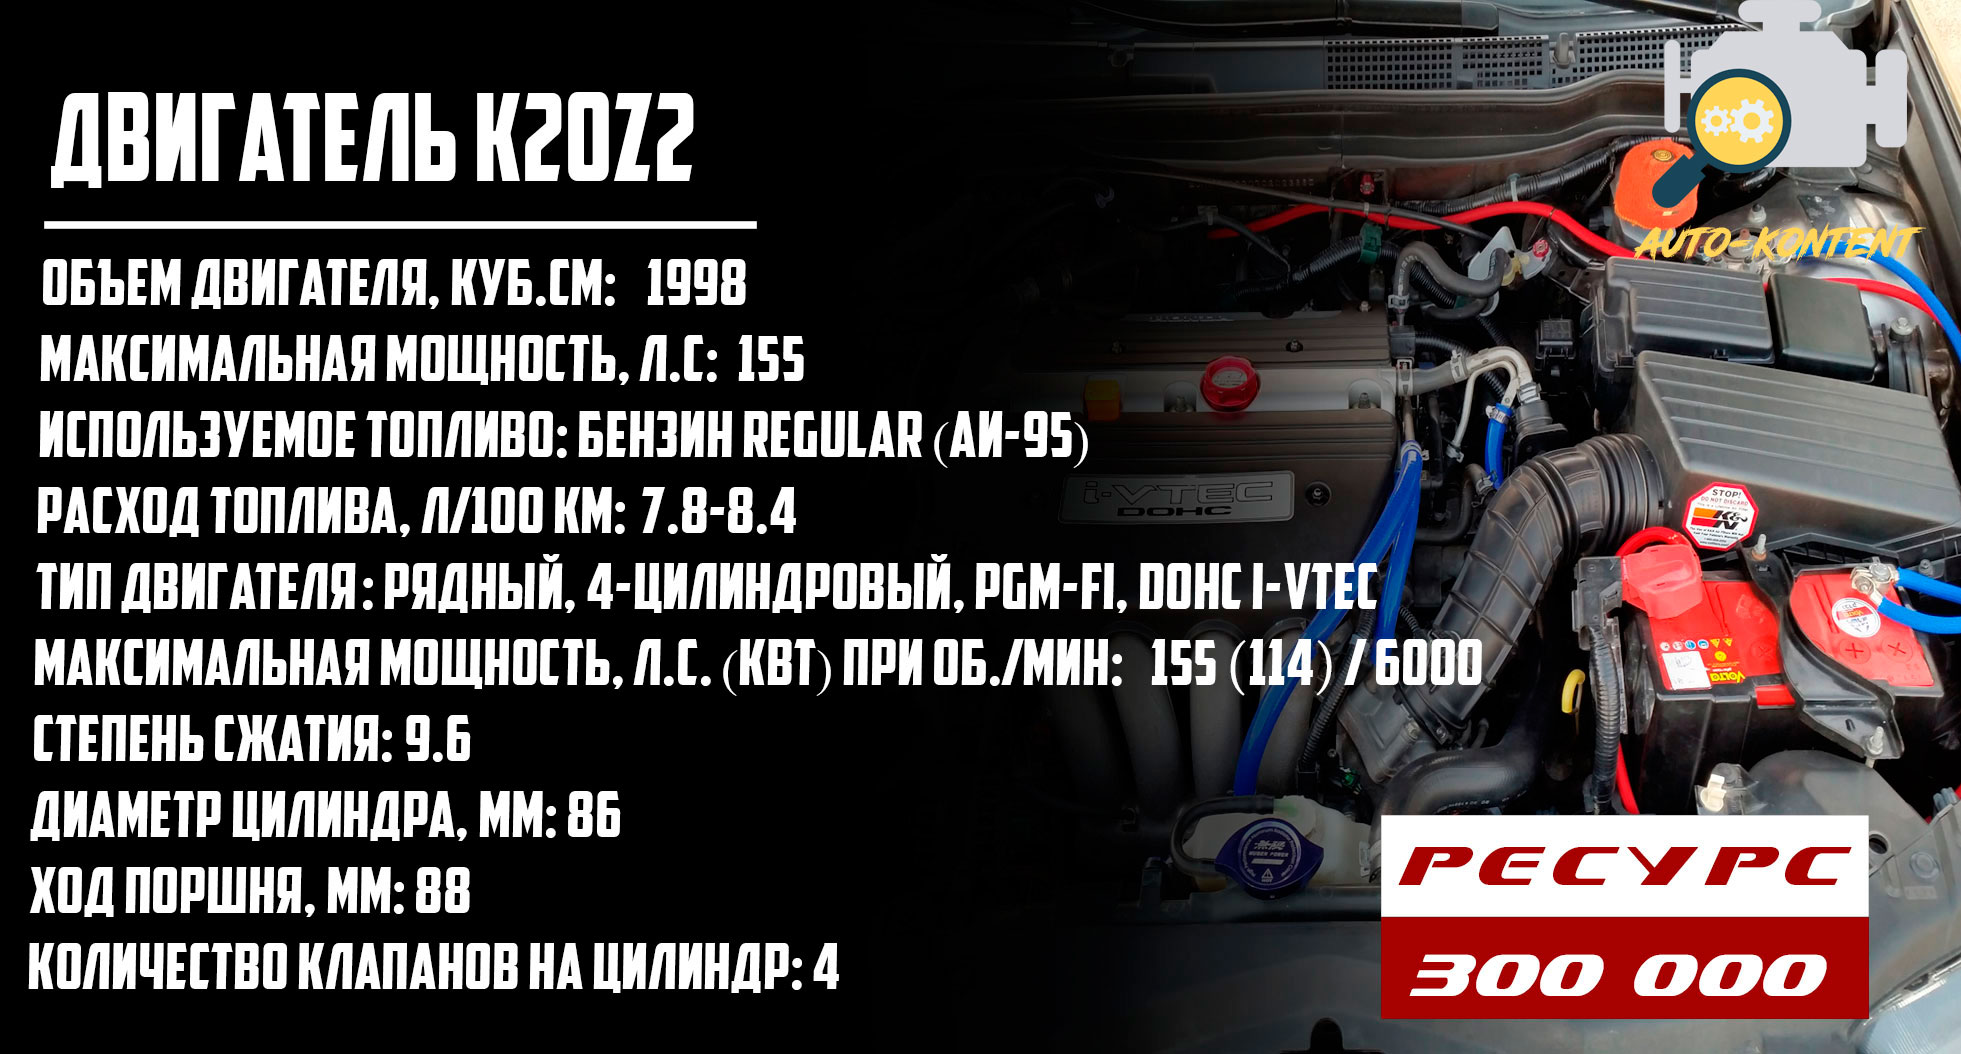 ресурс двигателя K20Z2